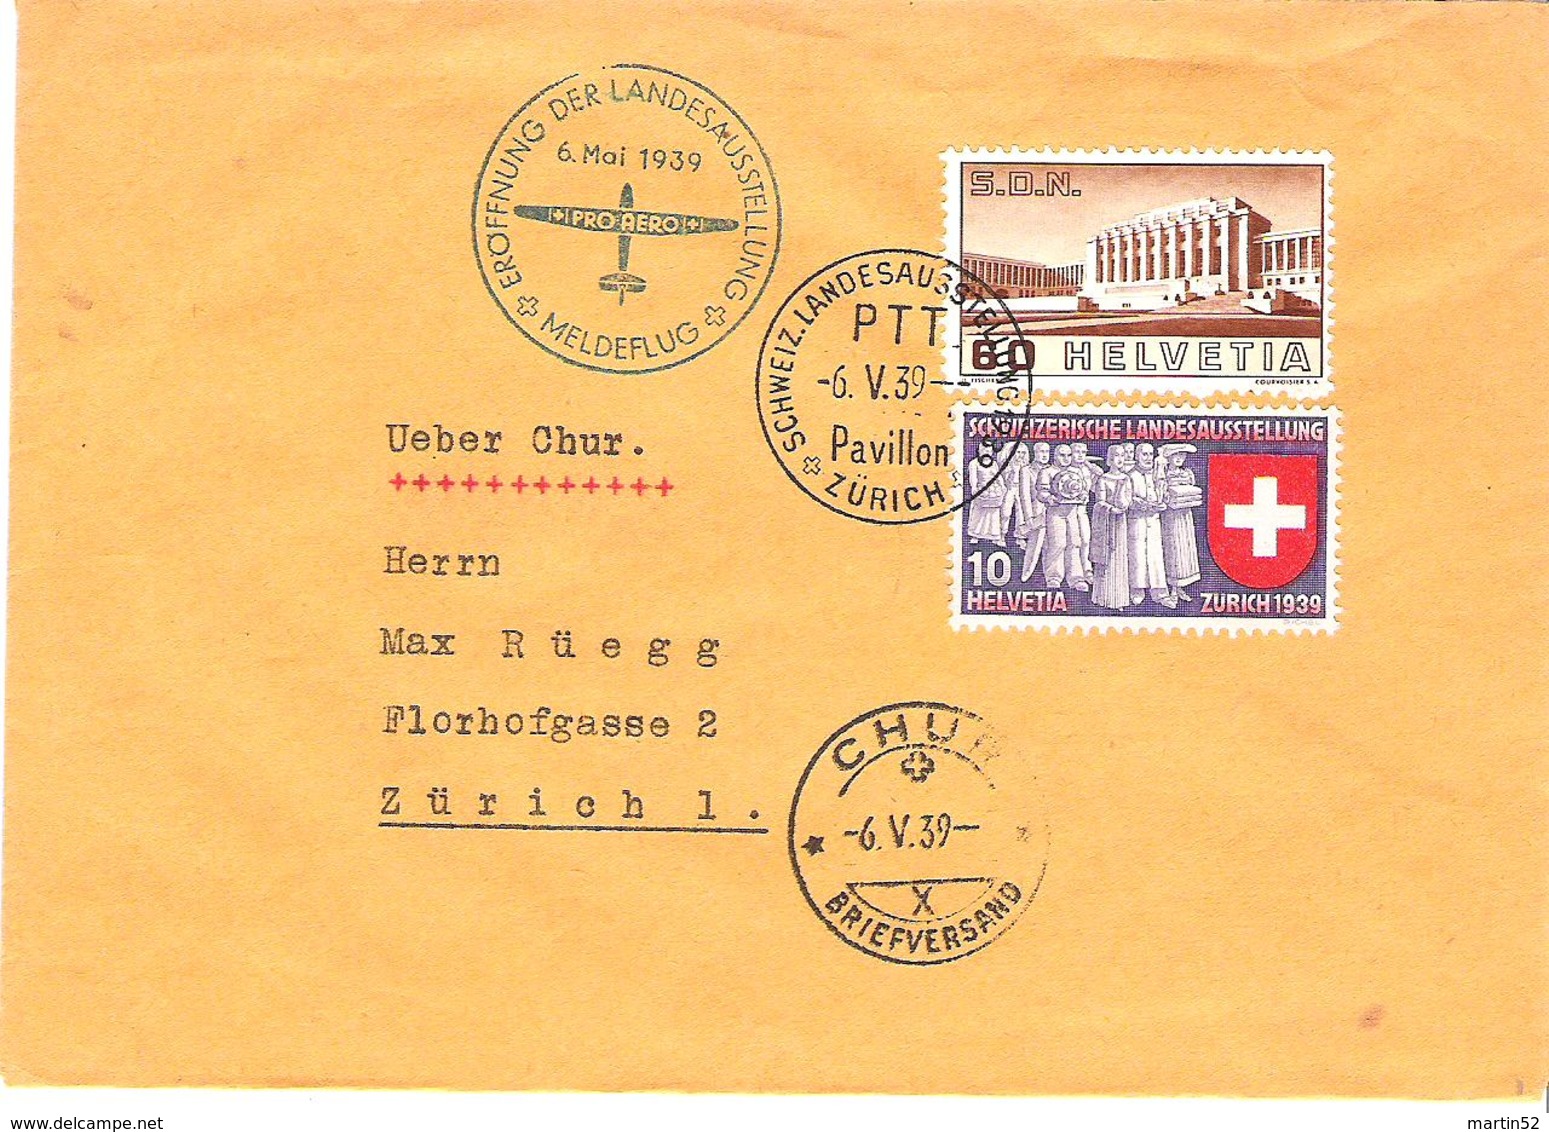 Schweiz Suisse 1939: Pro Aero Meldeflug Zur LANDESAUSSTELLUNG Zürich Zu 213+219 Mi 323+335 Yv 309+326 >  CHUR 6.V.39 - Premiers Vols